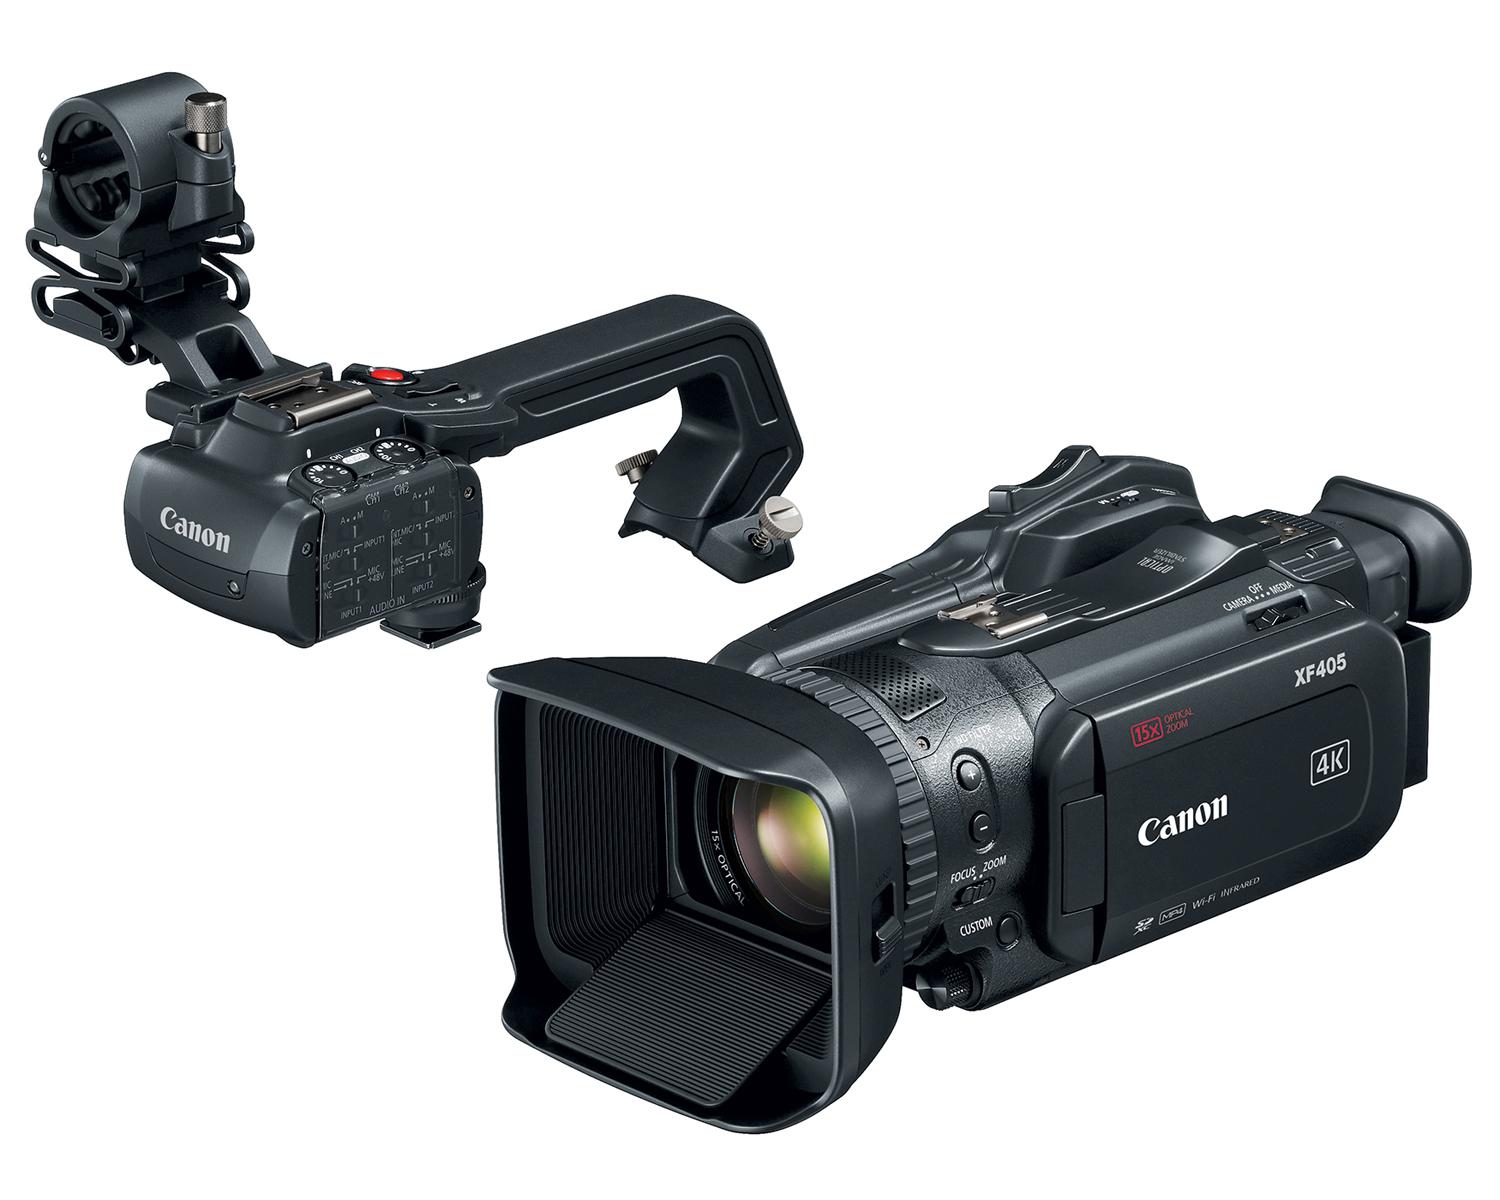 Caméscopes XF 405 4K UHD de Canon - Poignée détachée